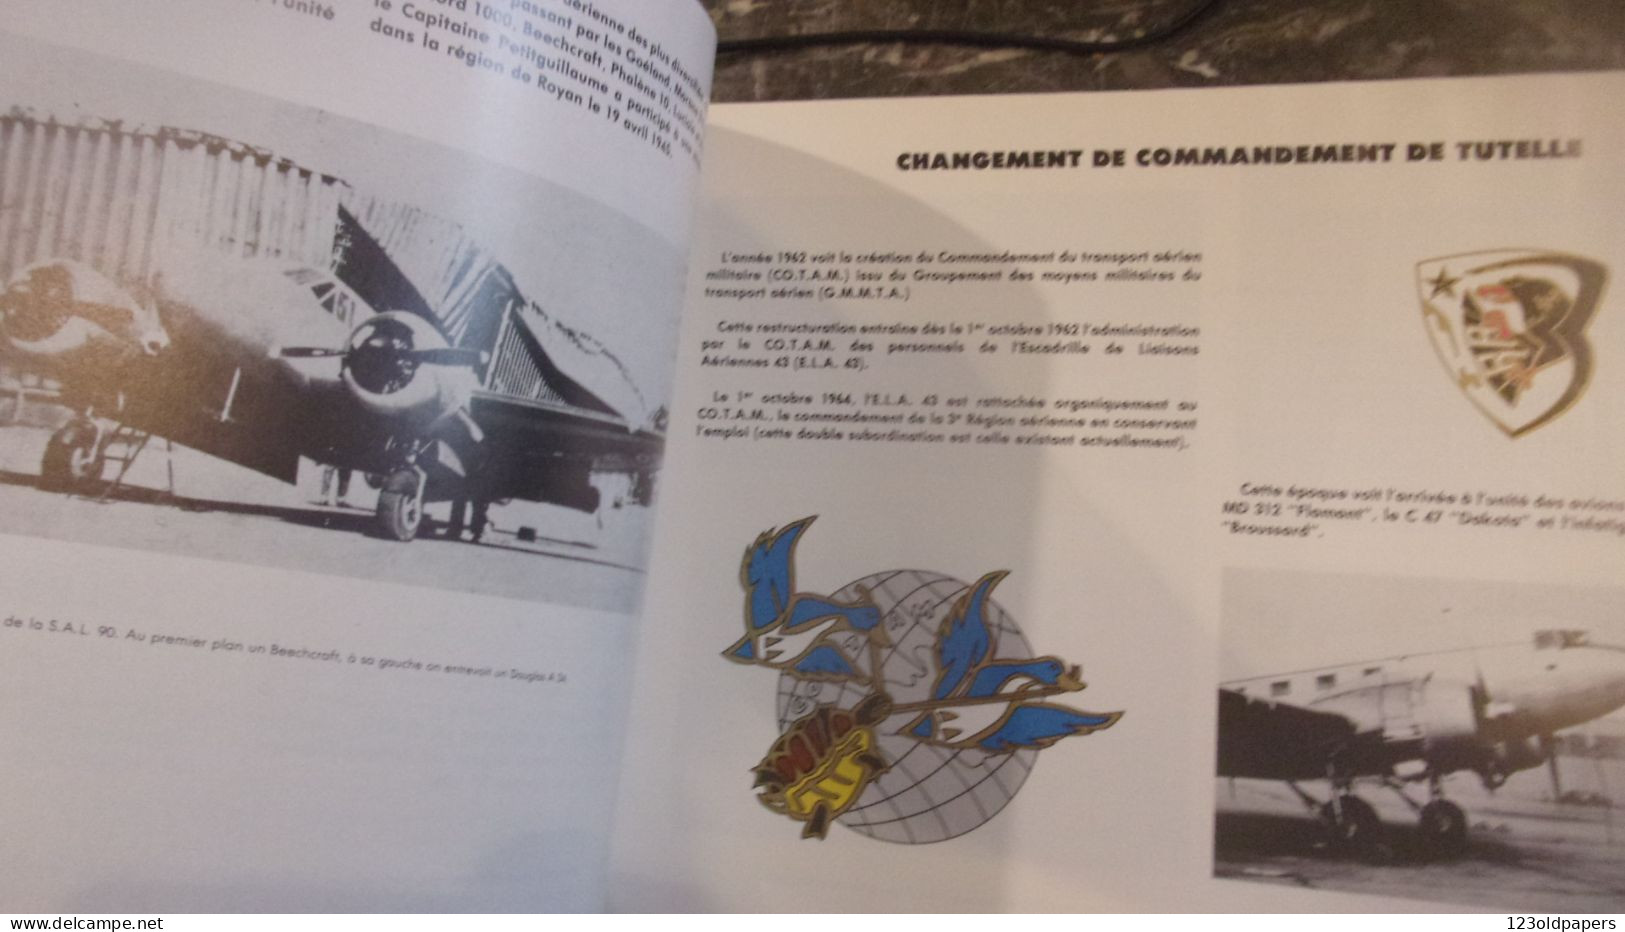 1984 AVIATION WWII ESCADRON DE TRANSPORT ET D ENTRAINEMENT MEDOC BORDEAUX MERIGNAC  1944 /1984 EX N° 89/460 - Aviación